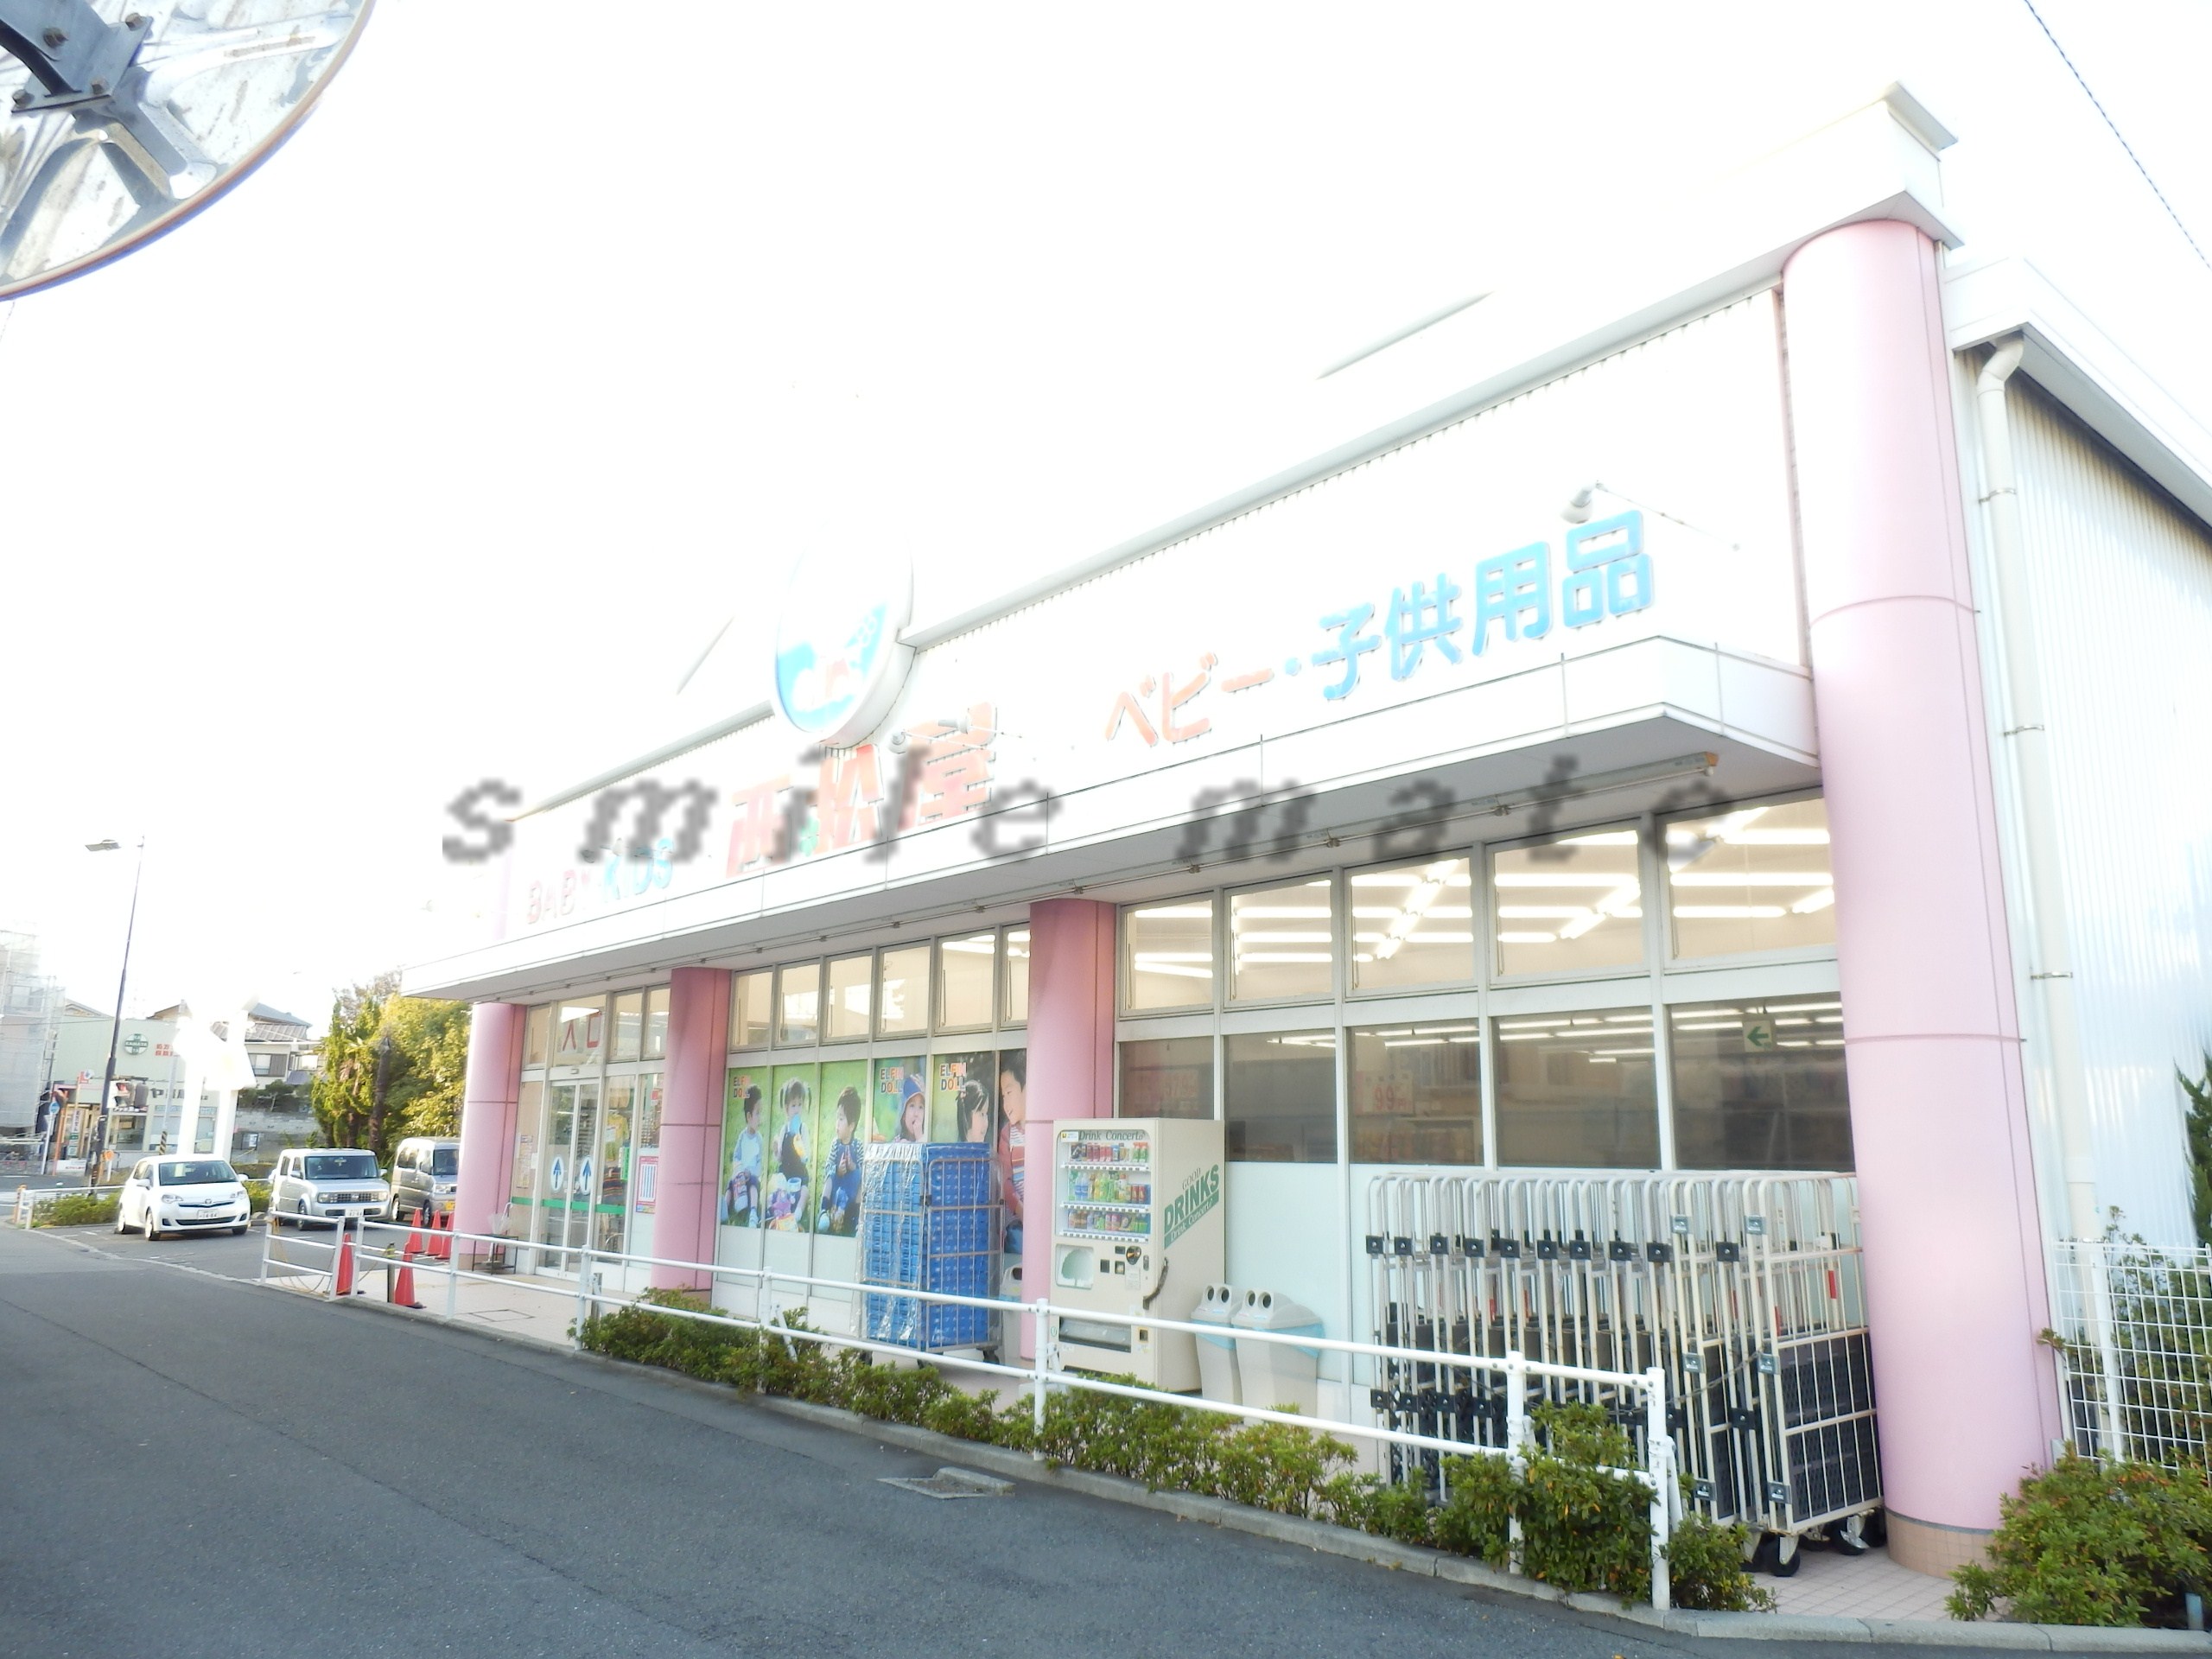 Shopping centre. Nishimatsuya Tsujido store up to (shopping center) 436m